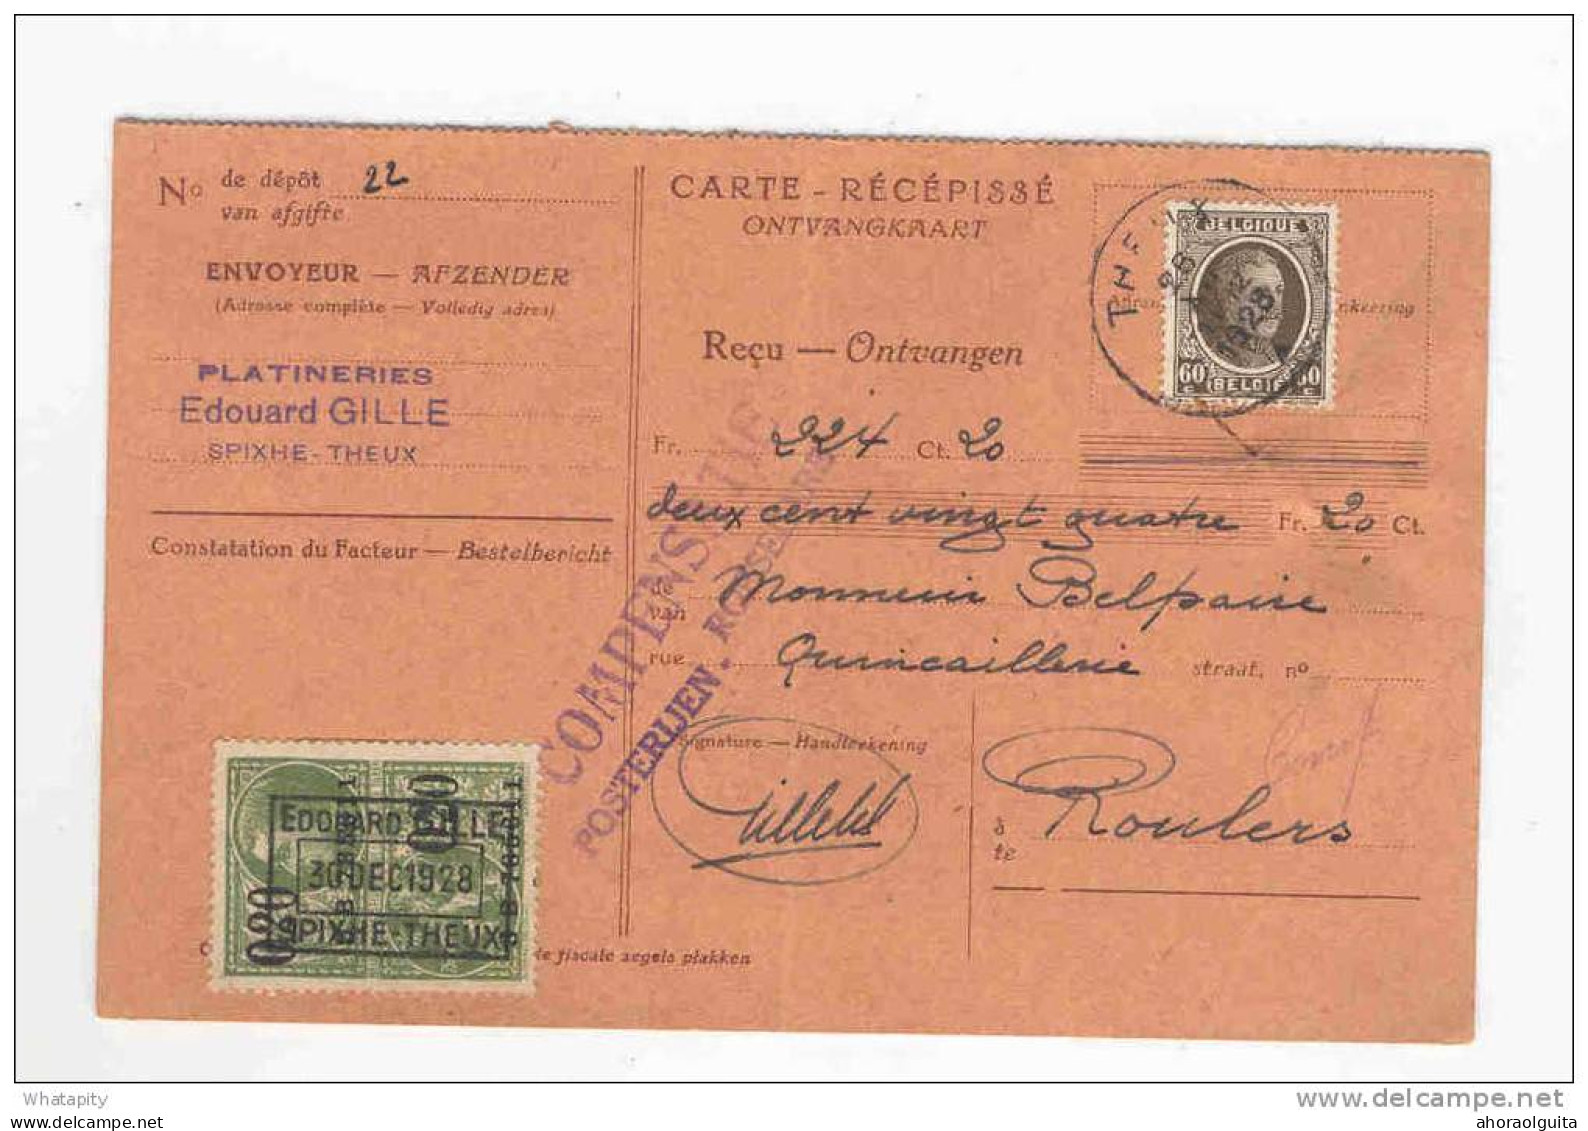 2 Cartes Récépissés 1928/1936 Vers ROULERS - Deux Griffes Différentes Compensatie Posterijen ROESELARE   --  KK818 - Post Office Leaflets